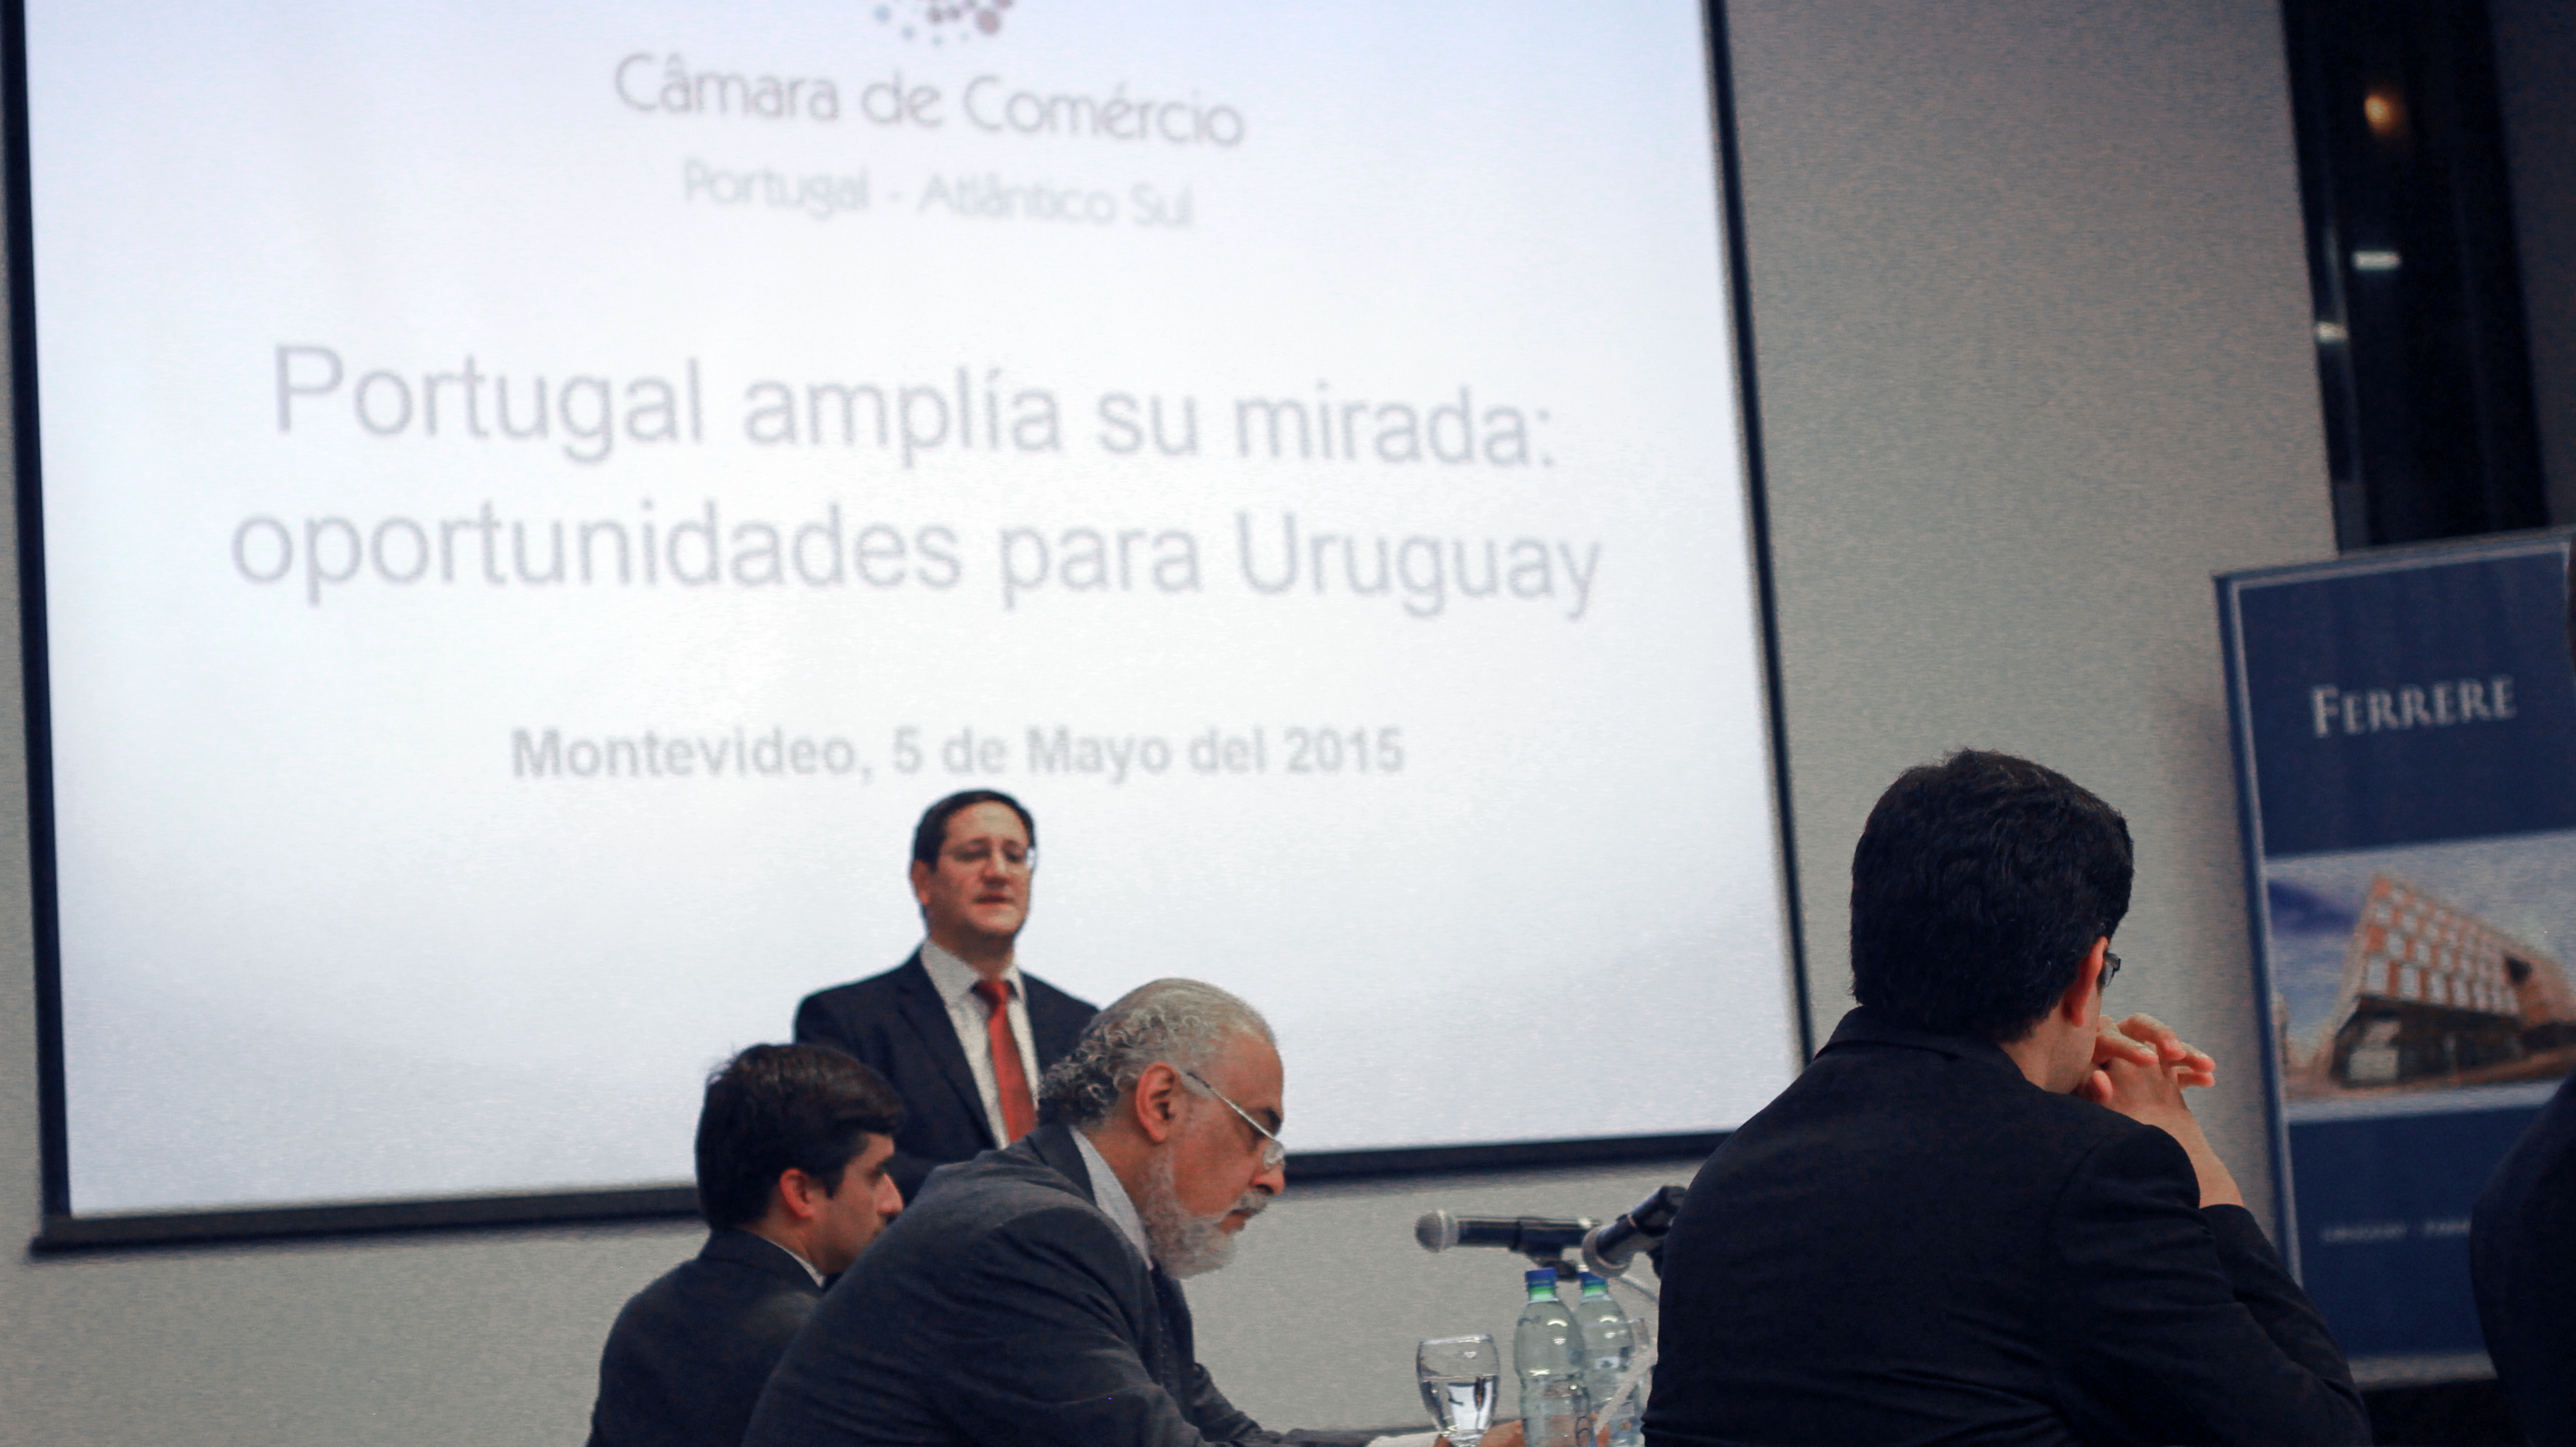 Cámara de Comercio Portugal – Atlántico Sur abre nuevas oportunidades para Uruguay